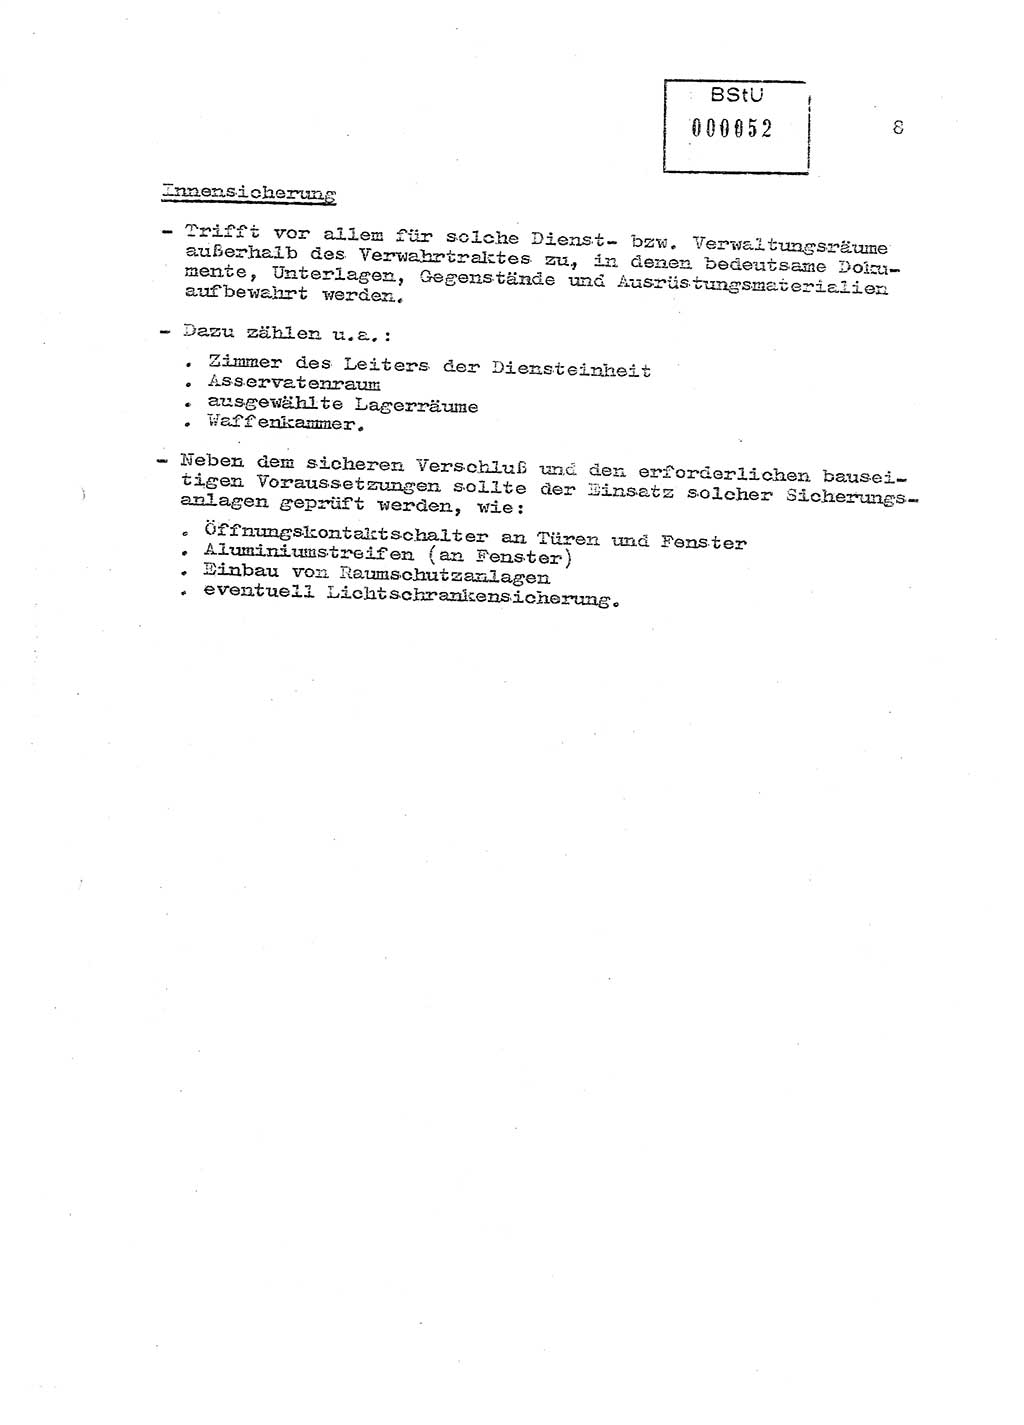 Sicherungs- und Nachrichtentechnik in UHA [Untersuchungshaftanstalten, Ministerium für Staatssicherheit, Deutsche Demokratische Republik (DDR)], Abteilung (Abt.) ⅩⅣ, Berlin 1980, Seite 8 (Si.-NT UHA MfS DDR Abt. ⅩⅣ /80 1980, S. 8)